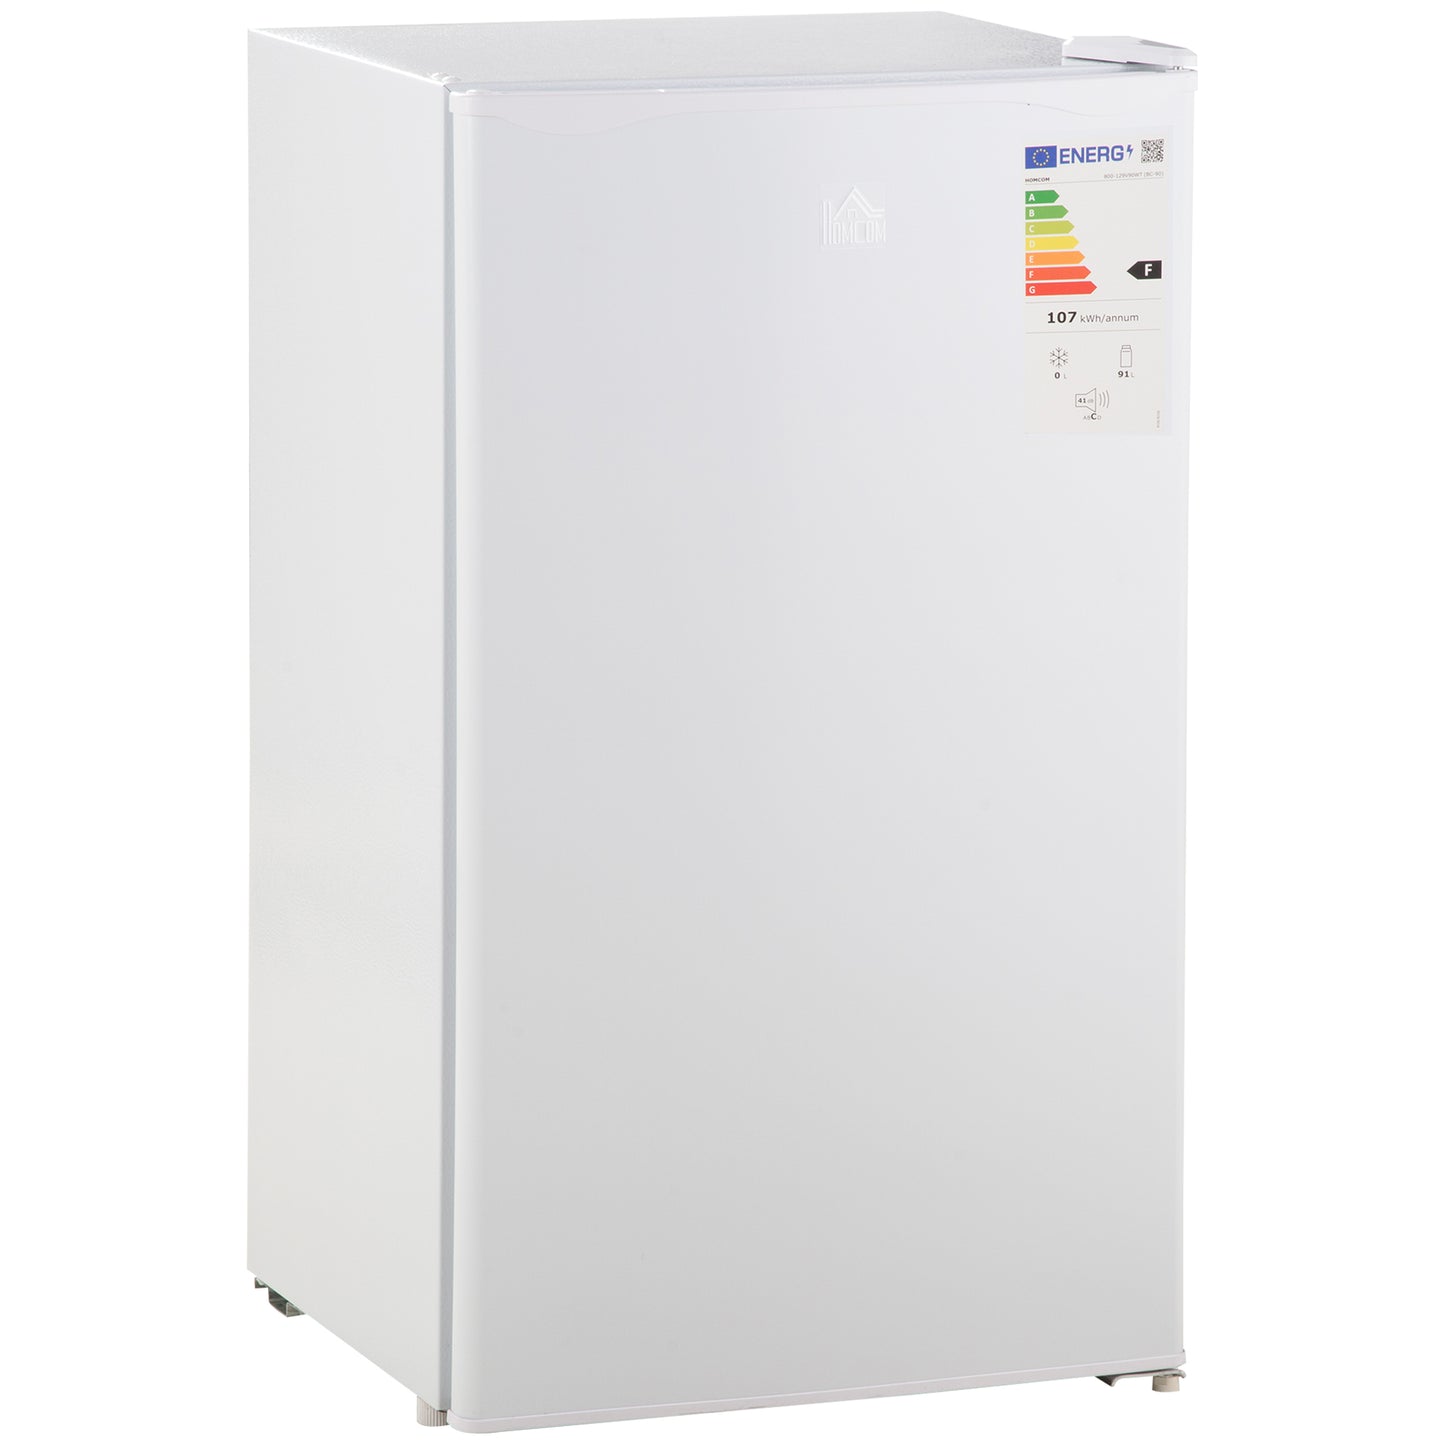 HOMCOM Mini Refrigerador 91L de Capacidad Nevera Eléctrica Pequeña Silencioso 41dB Frigorifico con Estante Ajustable Compartimento Congelador y Puerta Reversible 47,5x44,2x84 cm Blanco